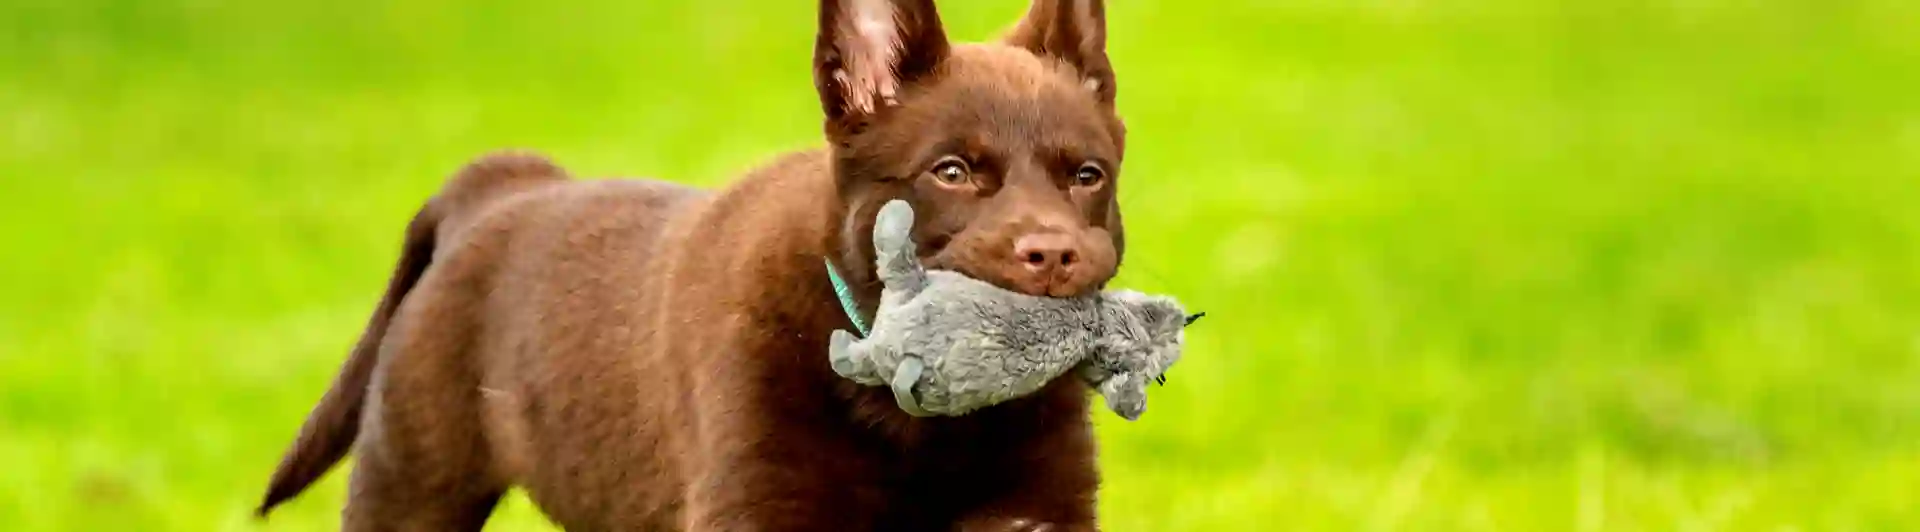 Hund av rasen Kelpie med leksak i munnen 